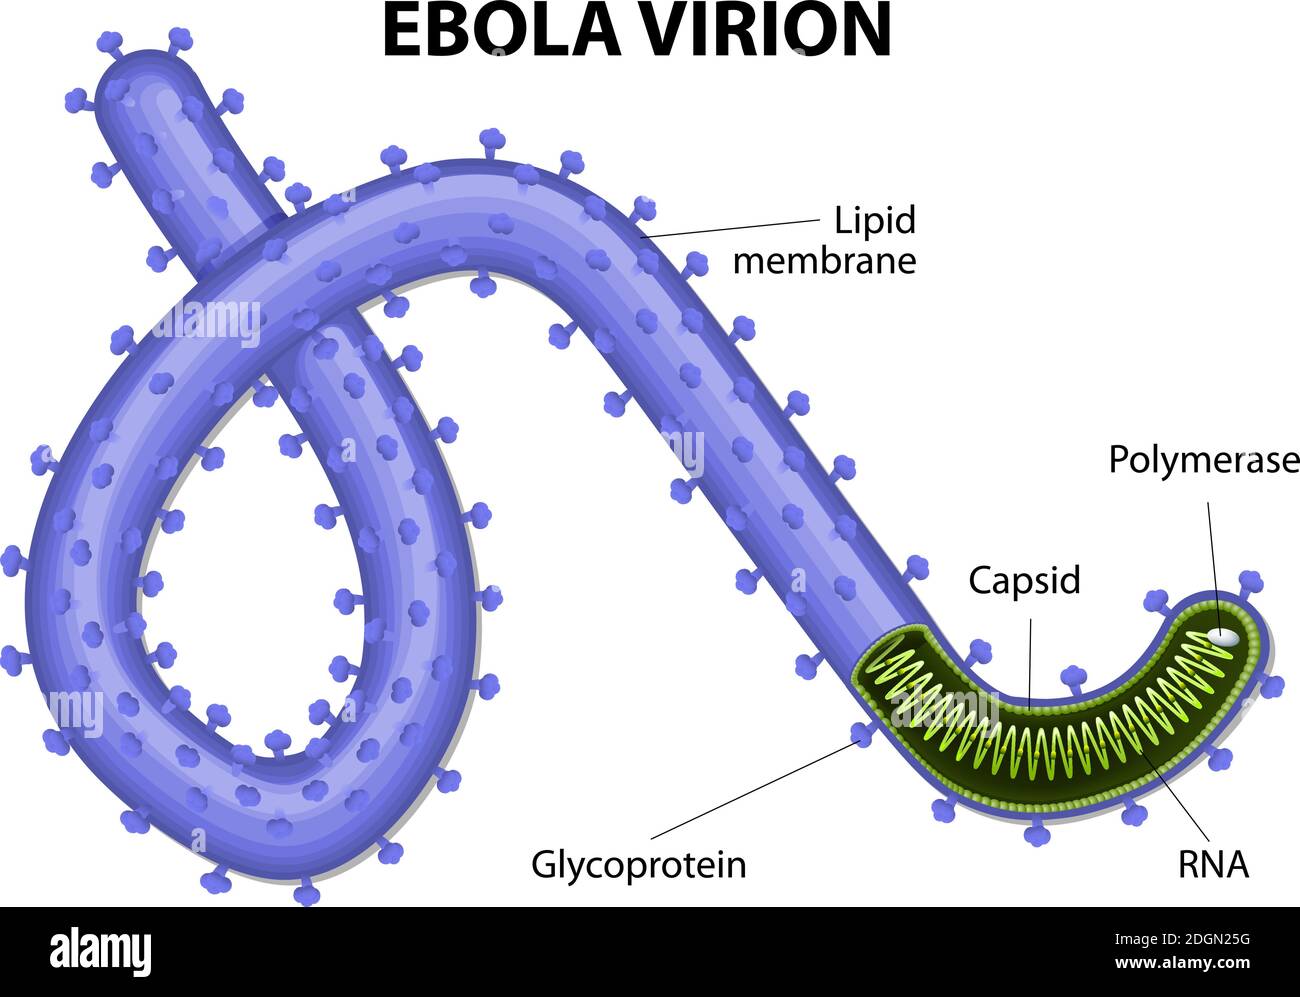 structure d'un virion ébolavirus. virus l'ebola ou la fièvre hémorragique est une cause de maladie grave et souvent mortelle chez l'homme. EVD ou EHF. Illustration de Vecteur